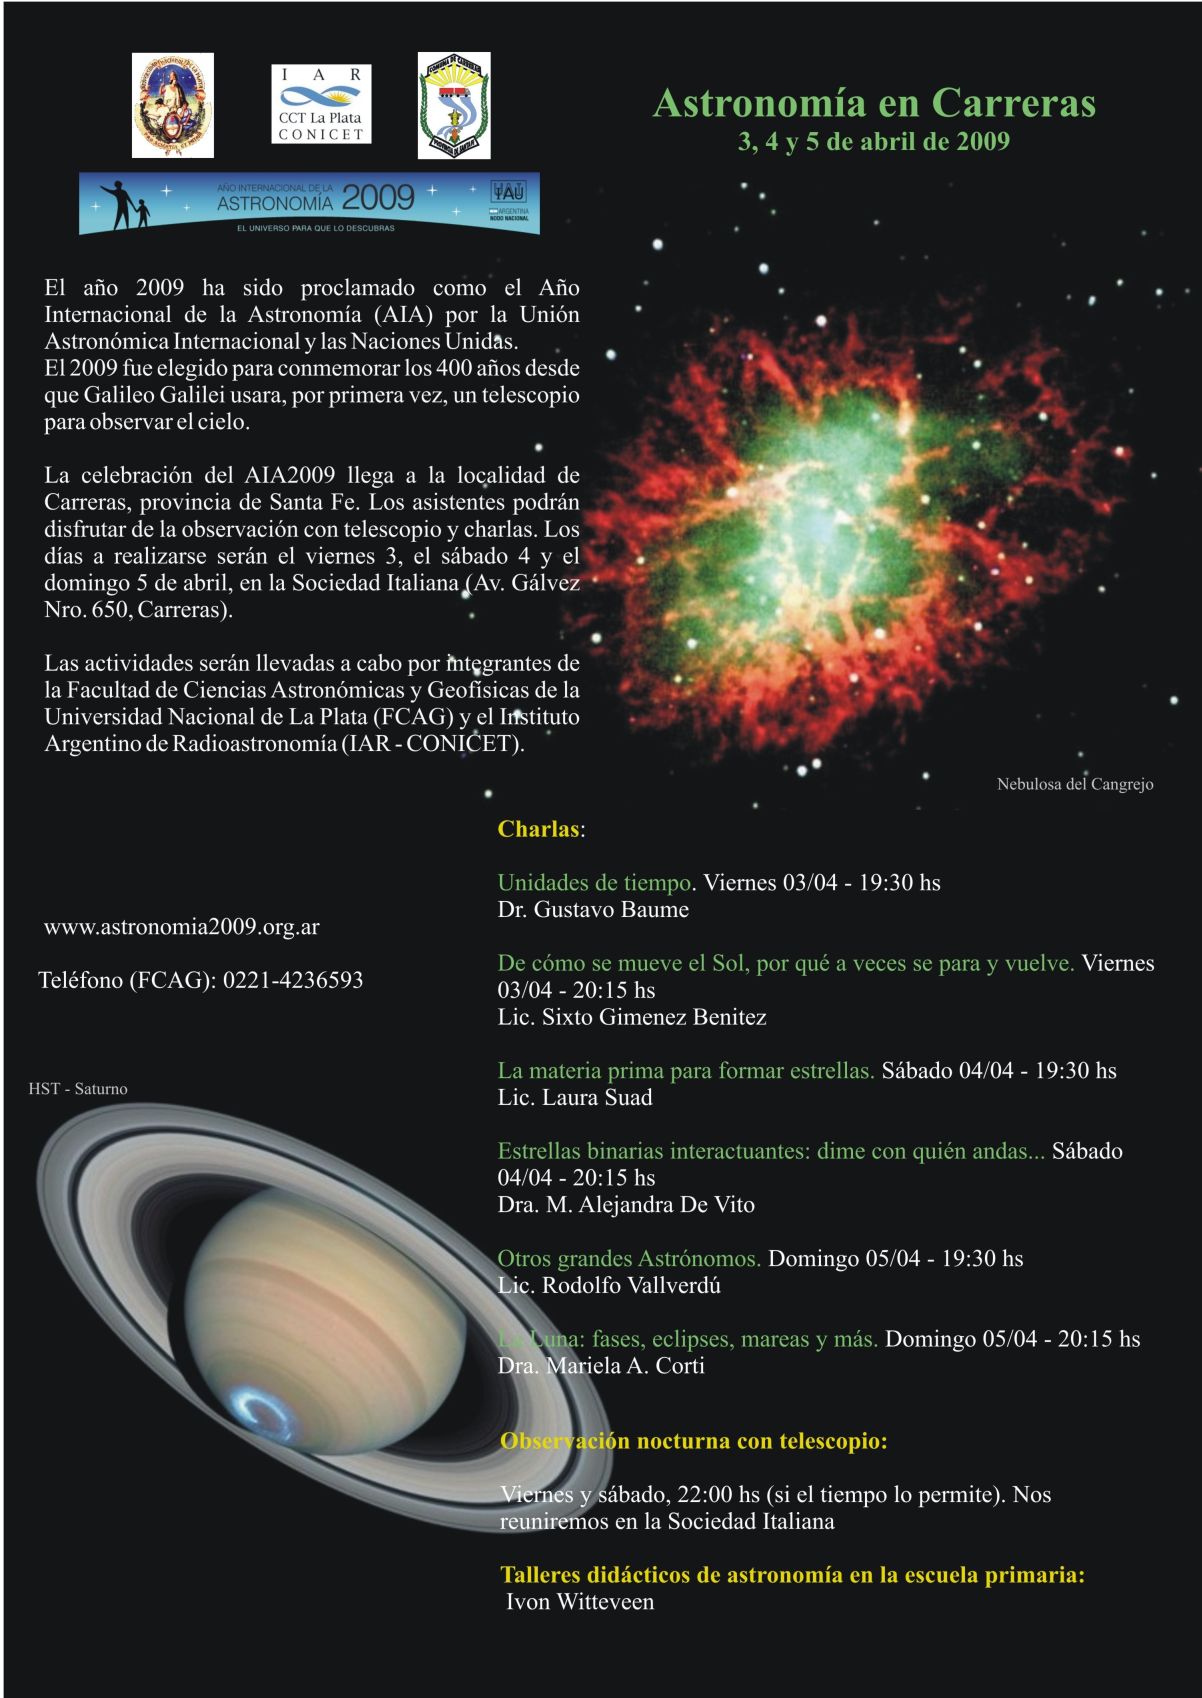 100 Horas de Astronomía en Carreras – Instituto Argentino de Radioastronomía